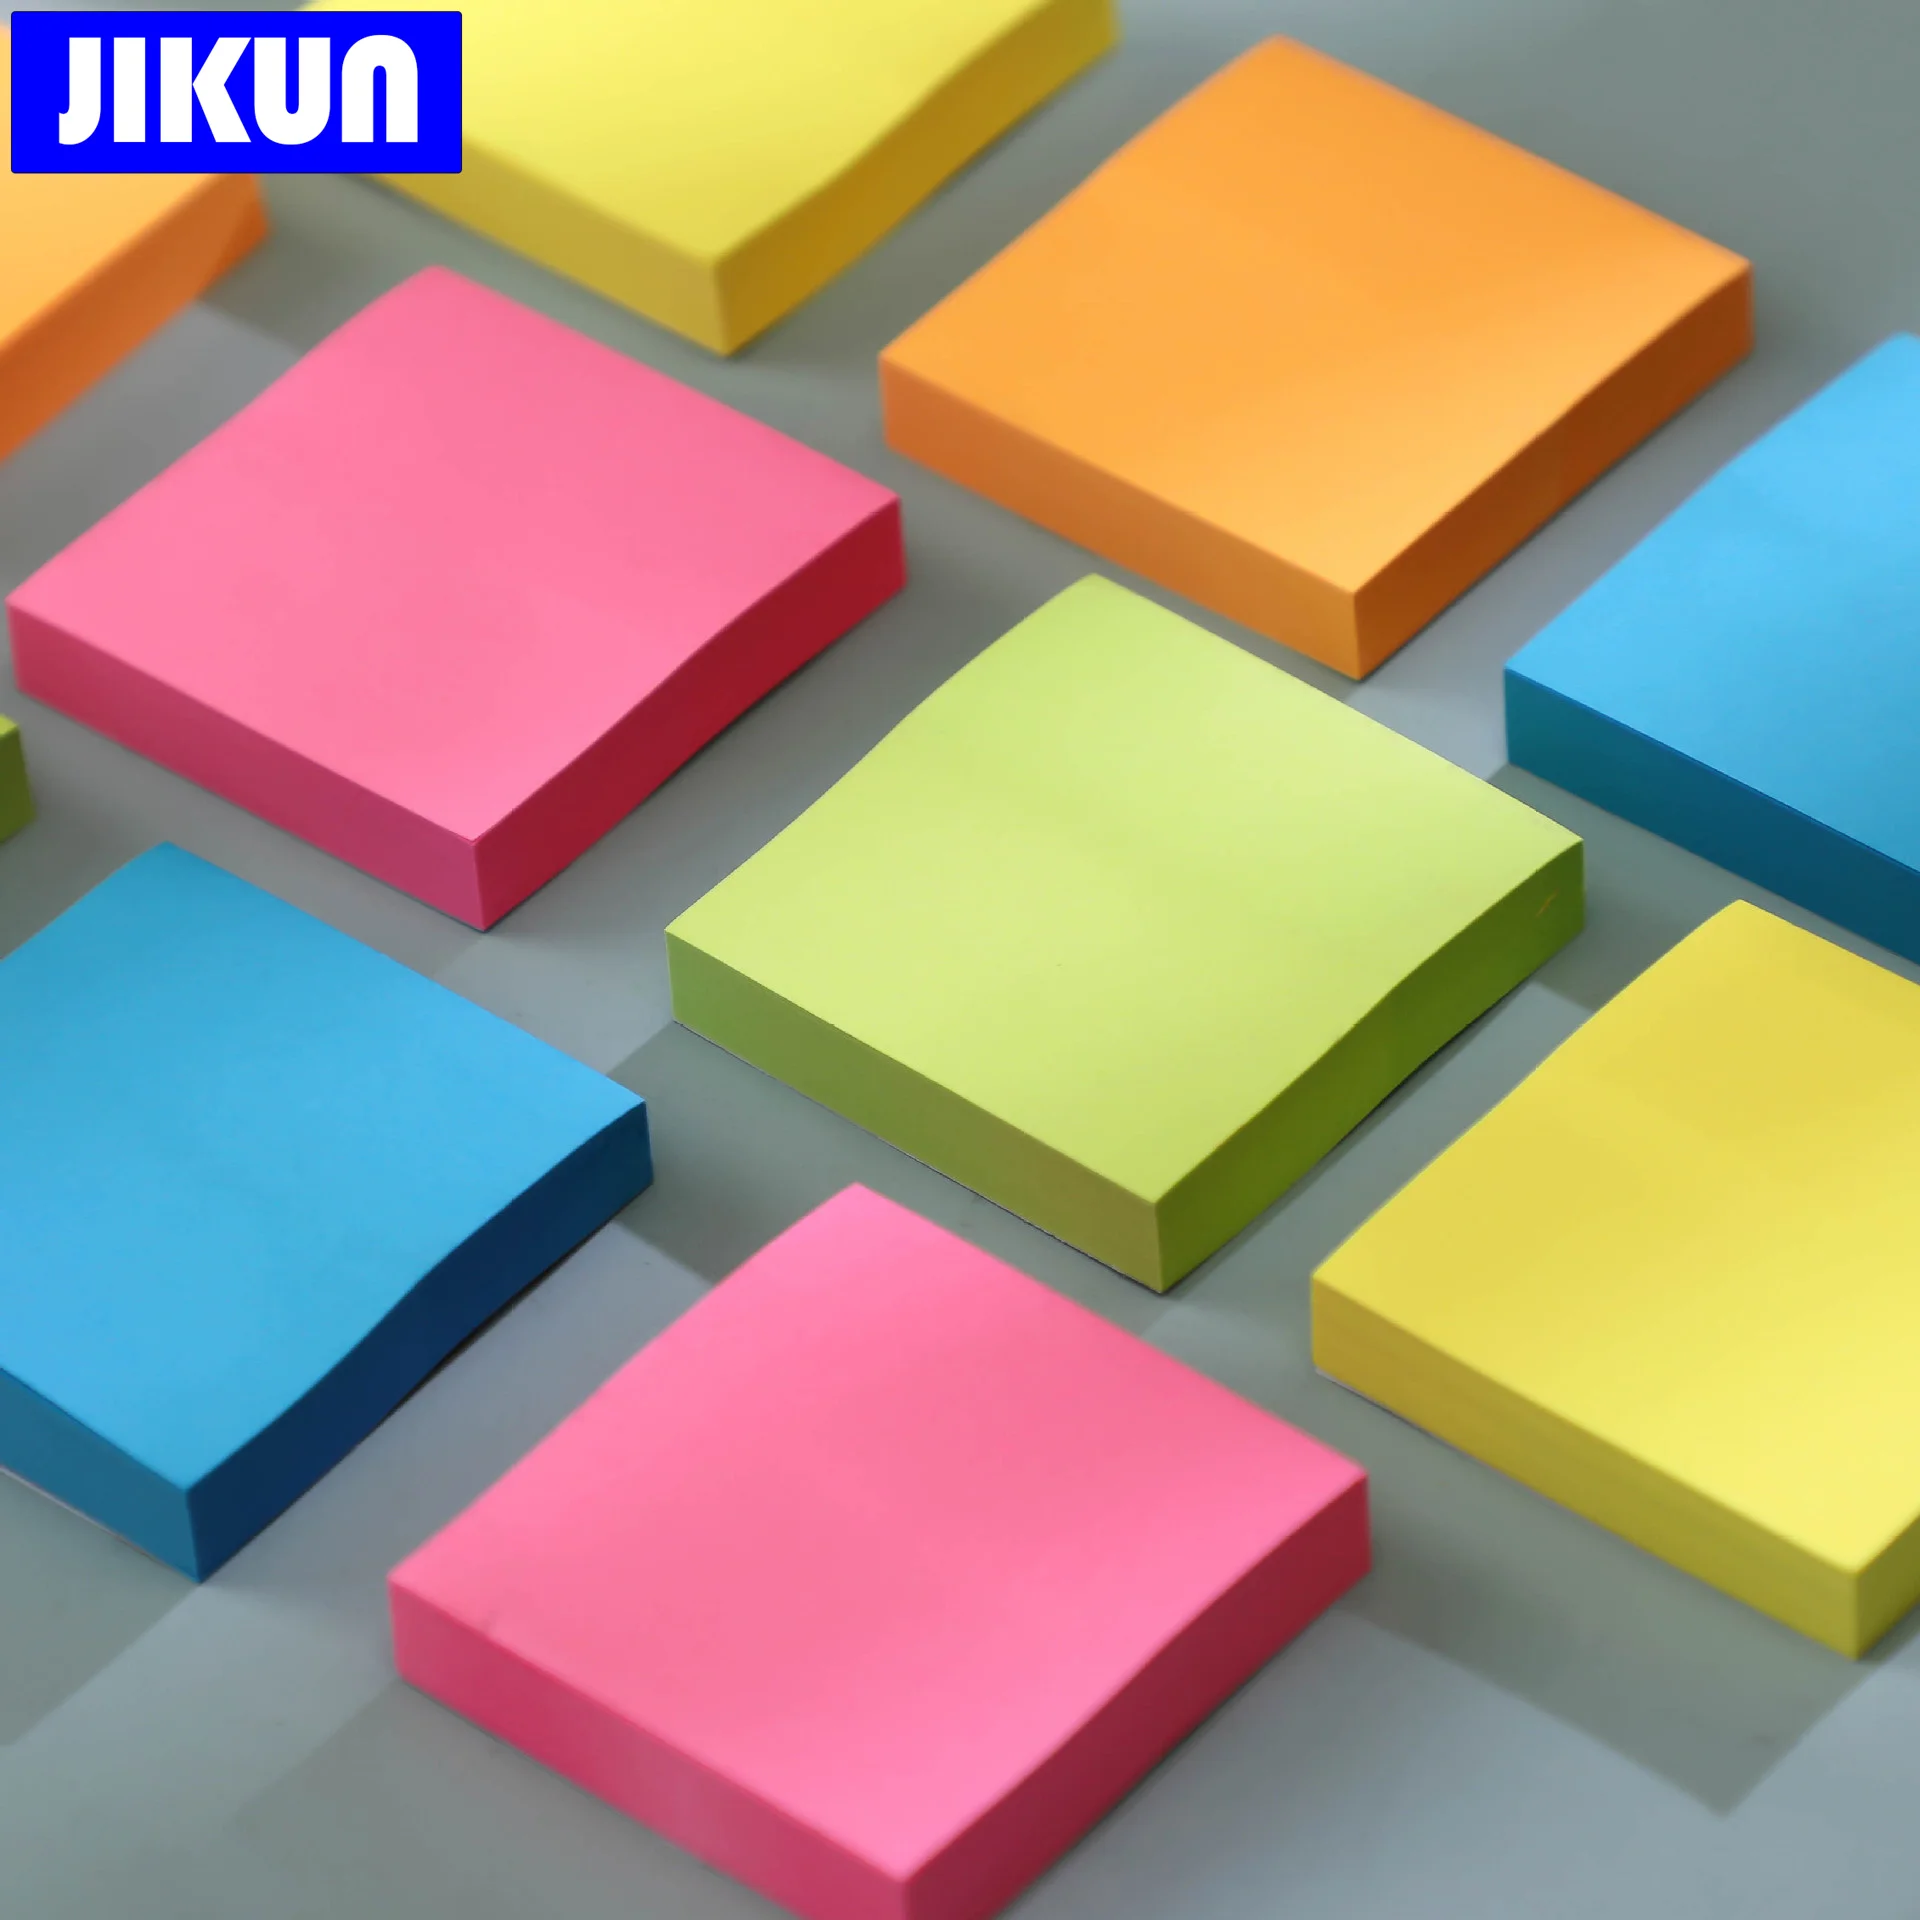 JIKUN 100 Листов Липких Заметок Канцелярские Принадлежности Красочный самоклеящийся блокнот для заметок 76x76 мм